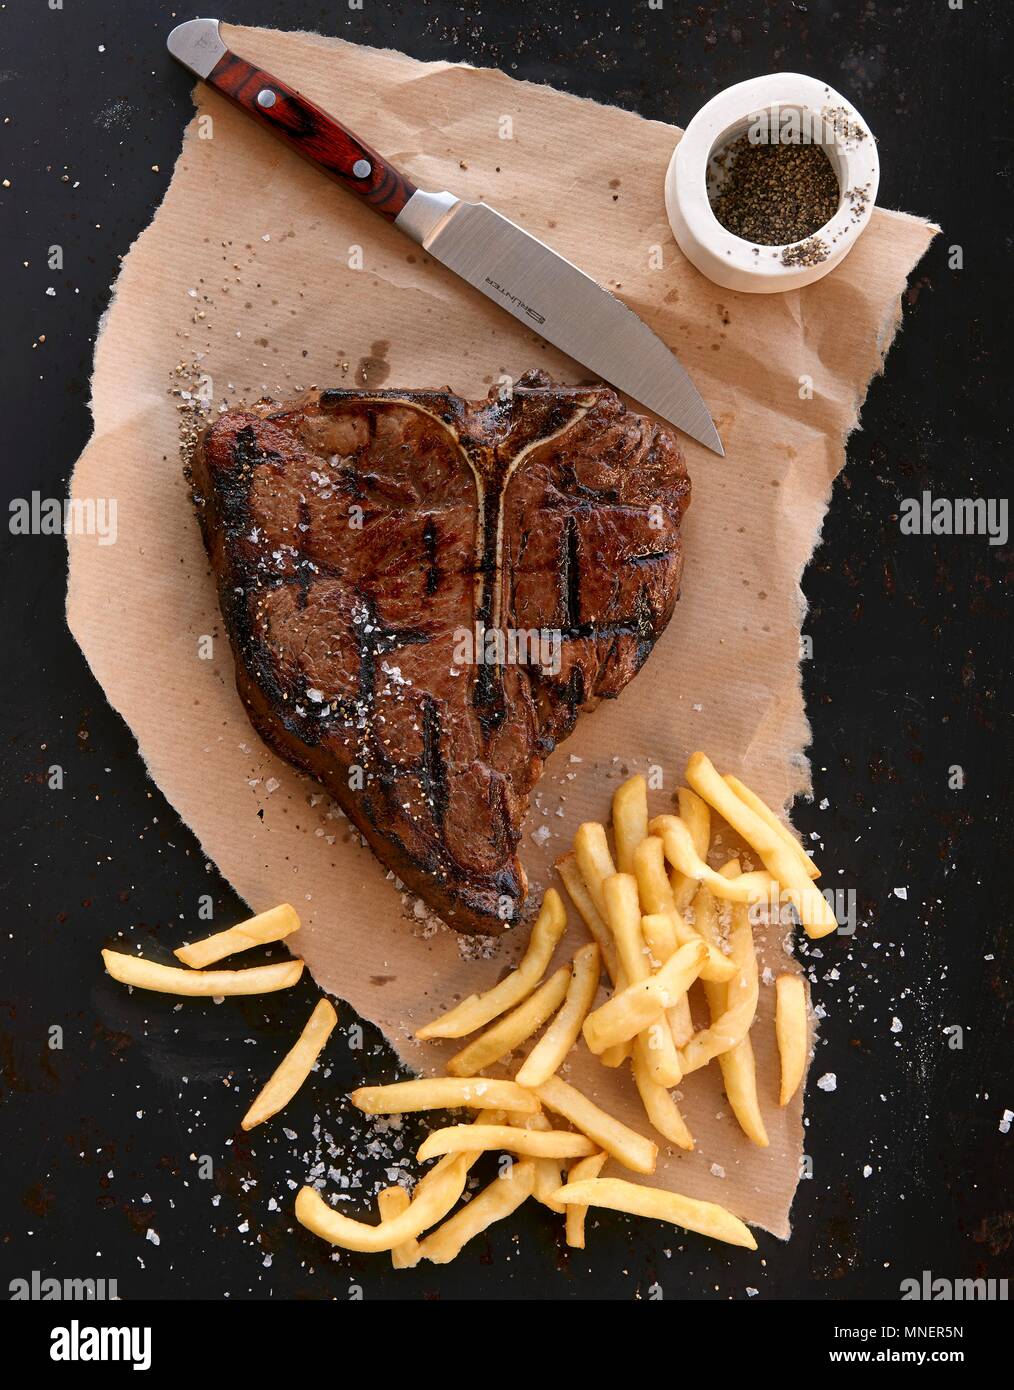 Porterhouse steak with fries Stock Photo